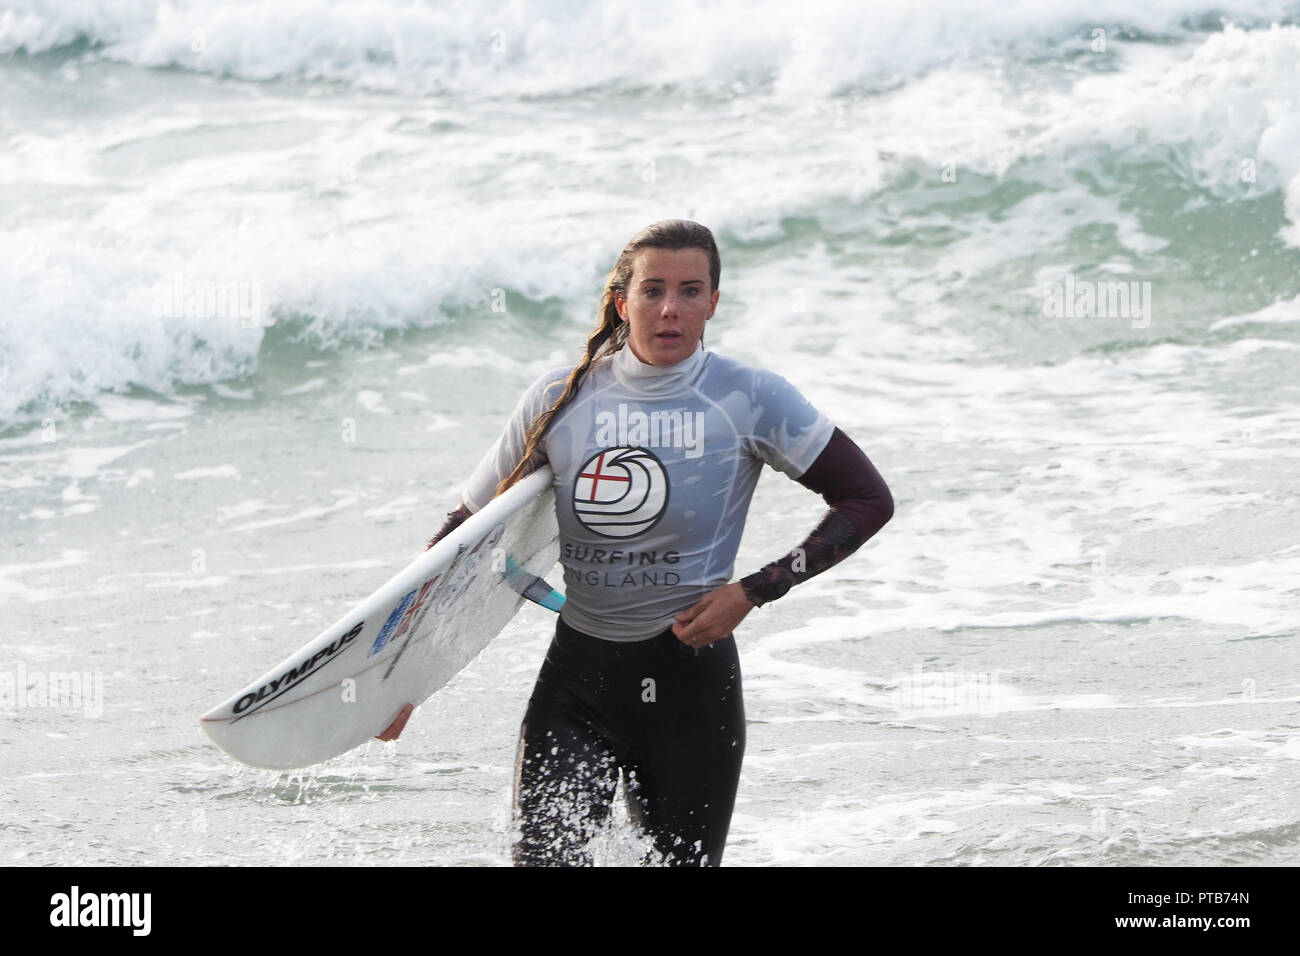 Championnats de surf britannique et de la Cup 2018 winnerJay ouvert, Mens Quinn 35 ans originaire de Nouvelle-Zélande, représentant le Pays de Galles, Roxy womens winner Lucy Banque D'Images